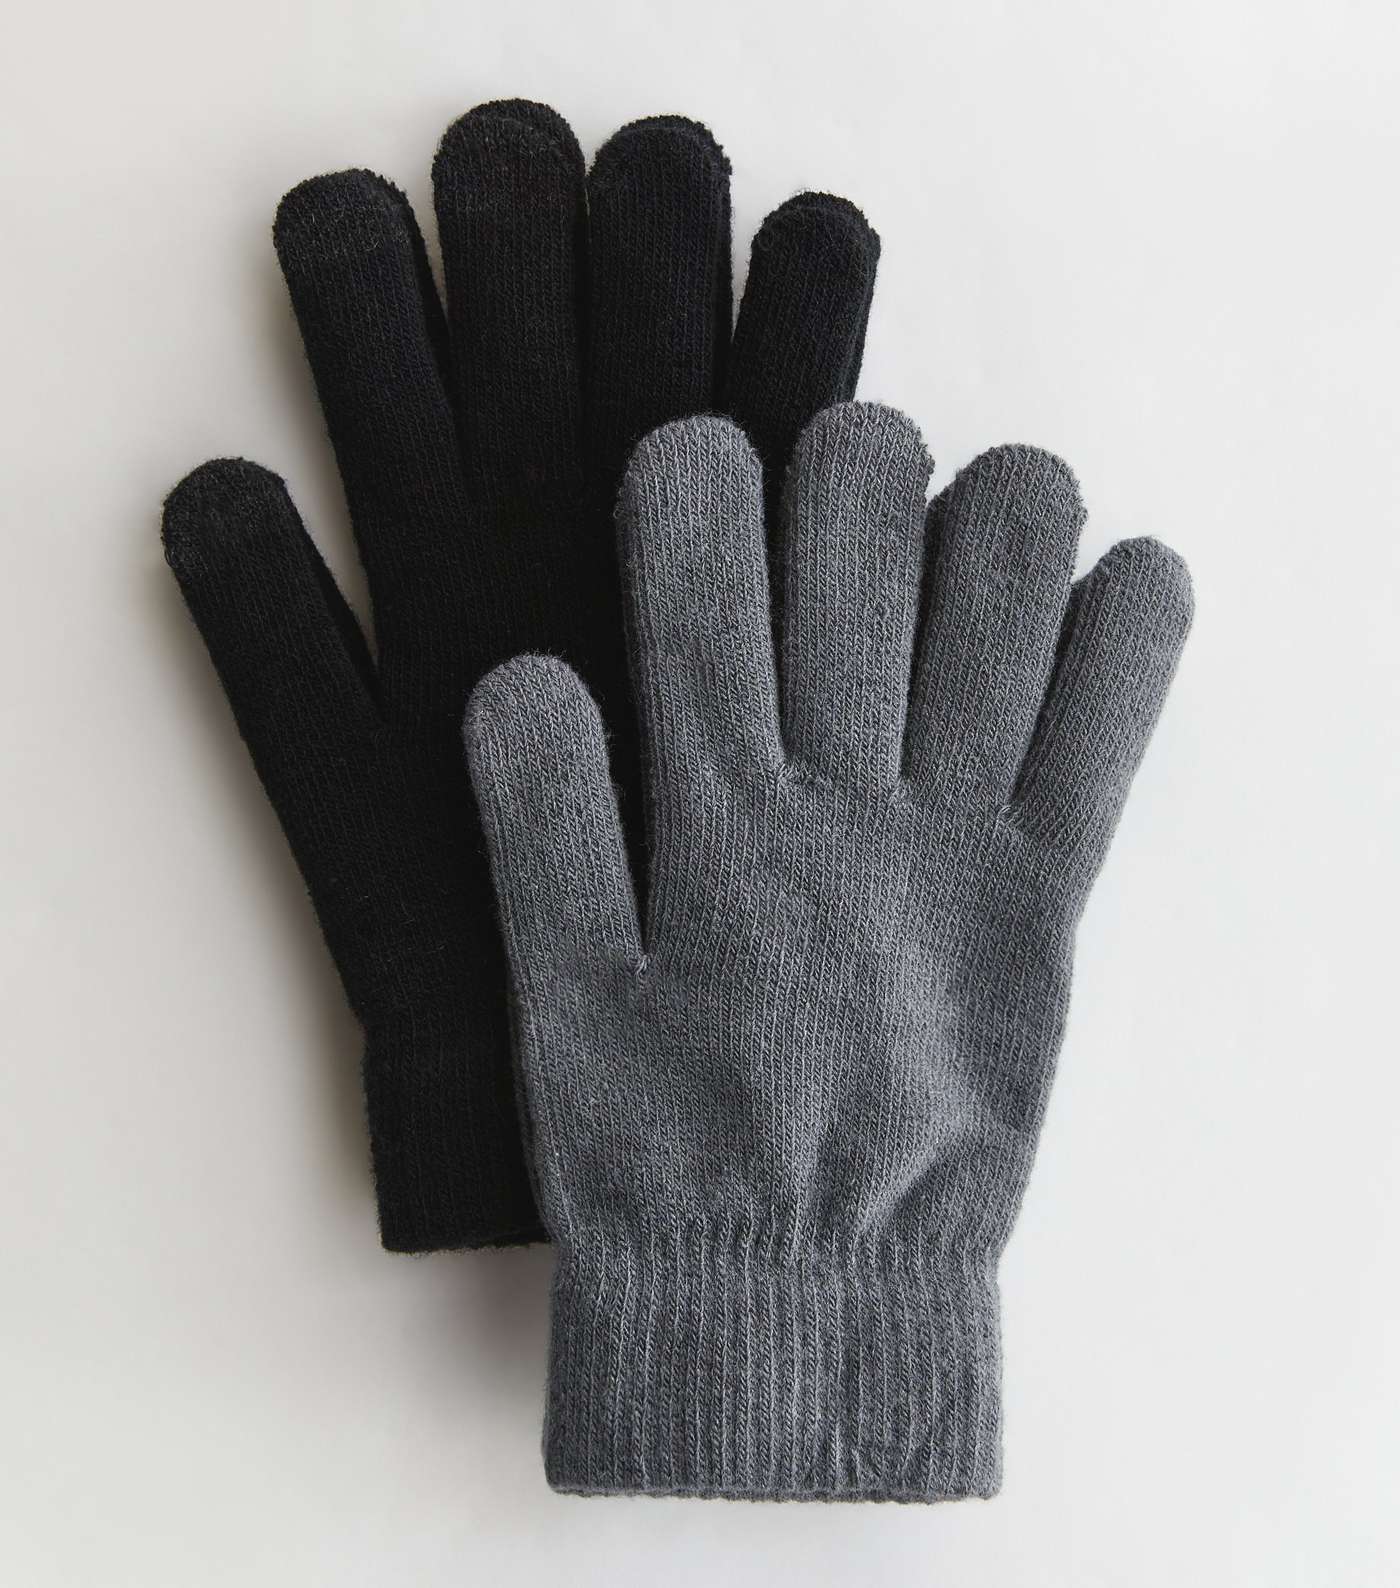 2 Pack Light Grey and Black Smart Gloves